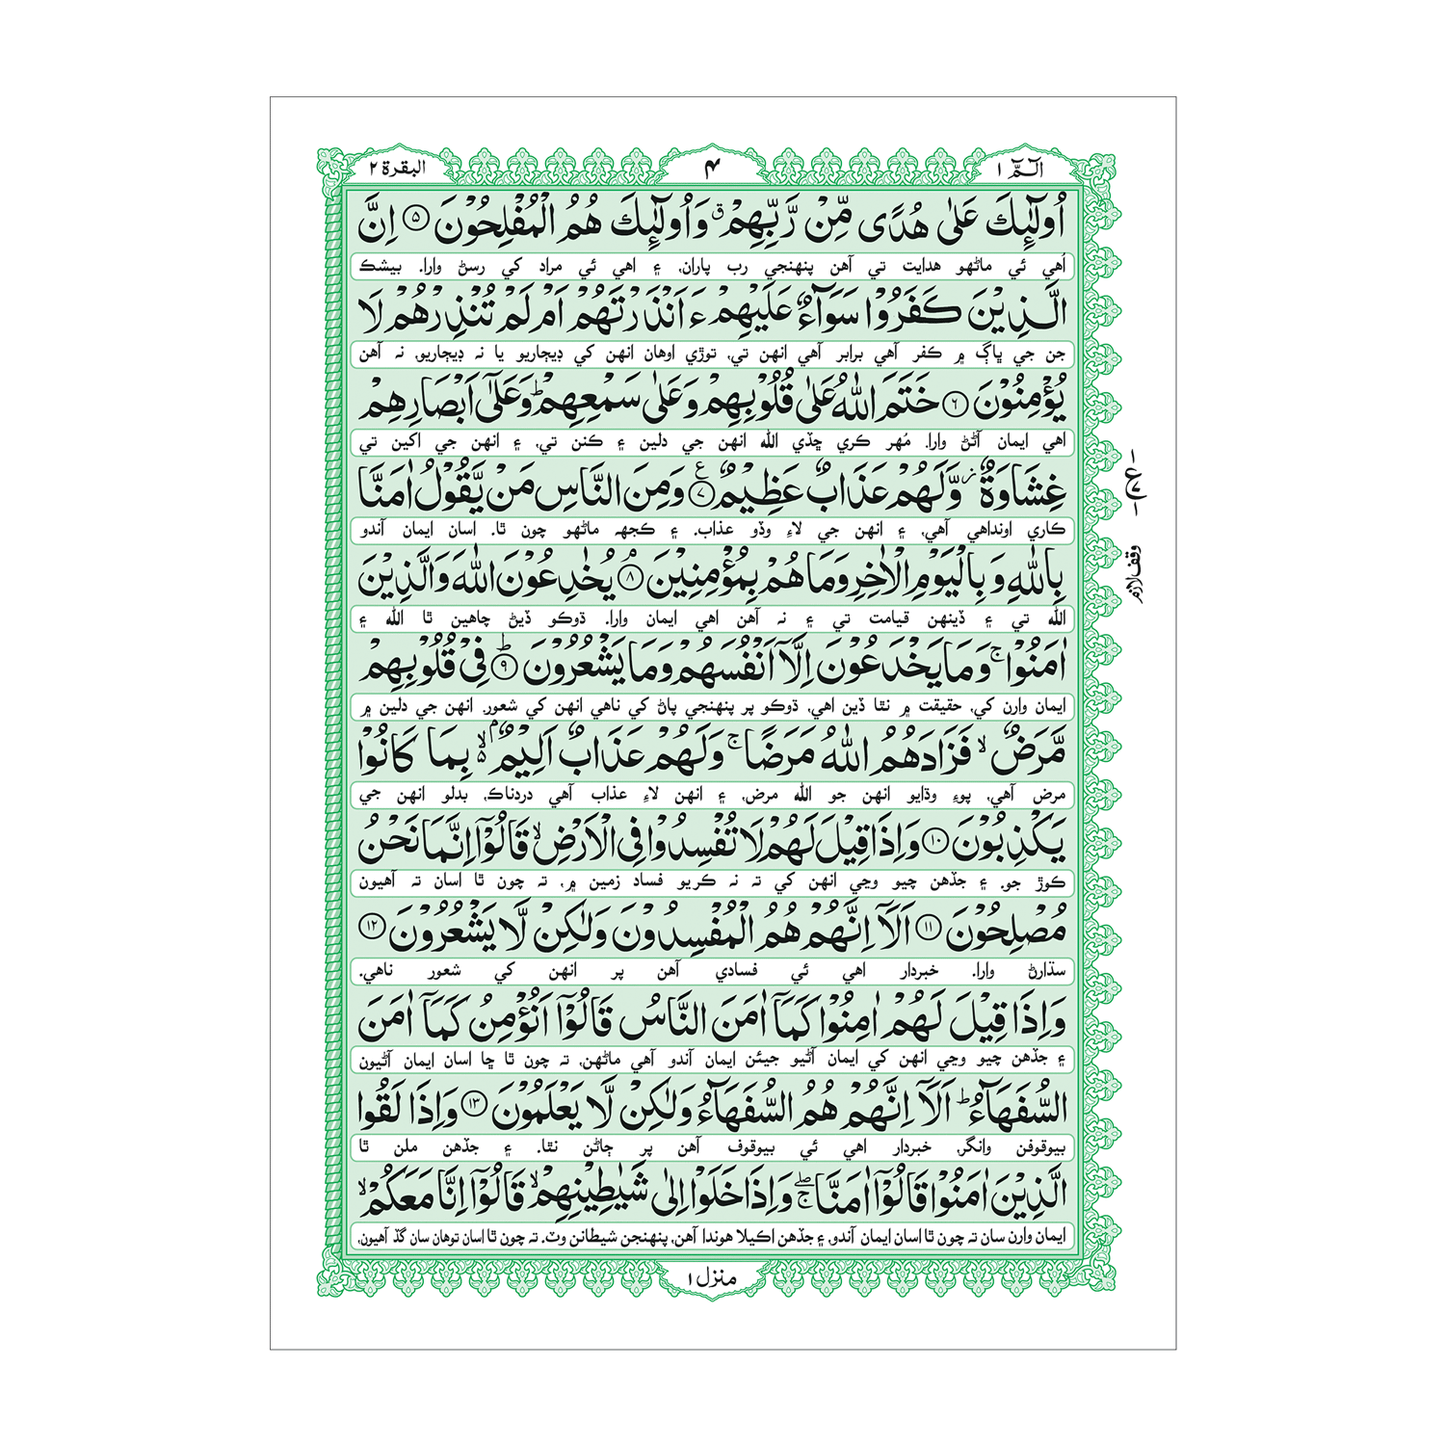 [87/L] Al-Quran-Ul-Kareem With Kanzul Iman (Sindhi Translation - Hazrat Mufti Muhammad Umer Khilji Qadri) - Bold Fonts